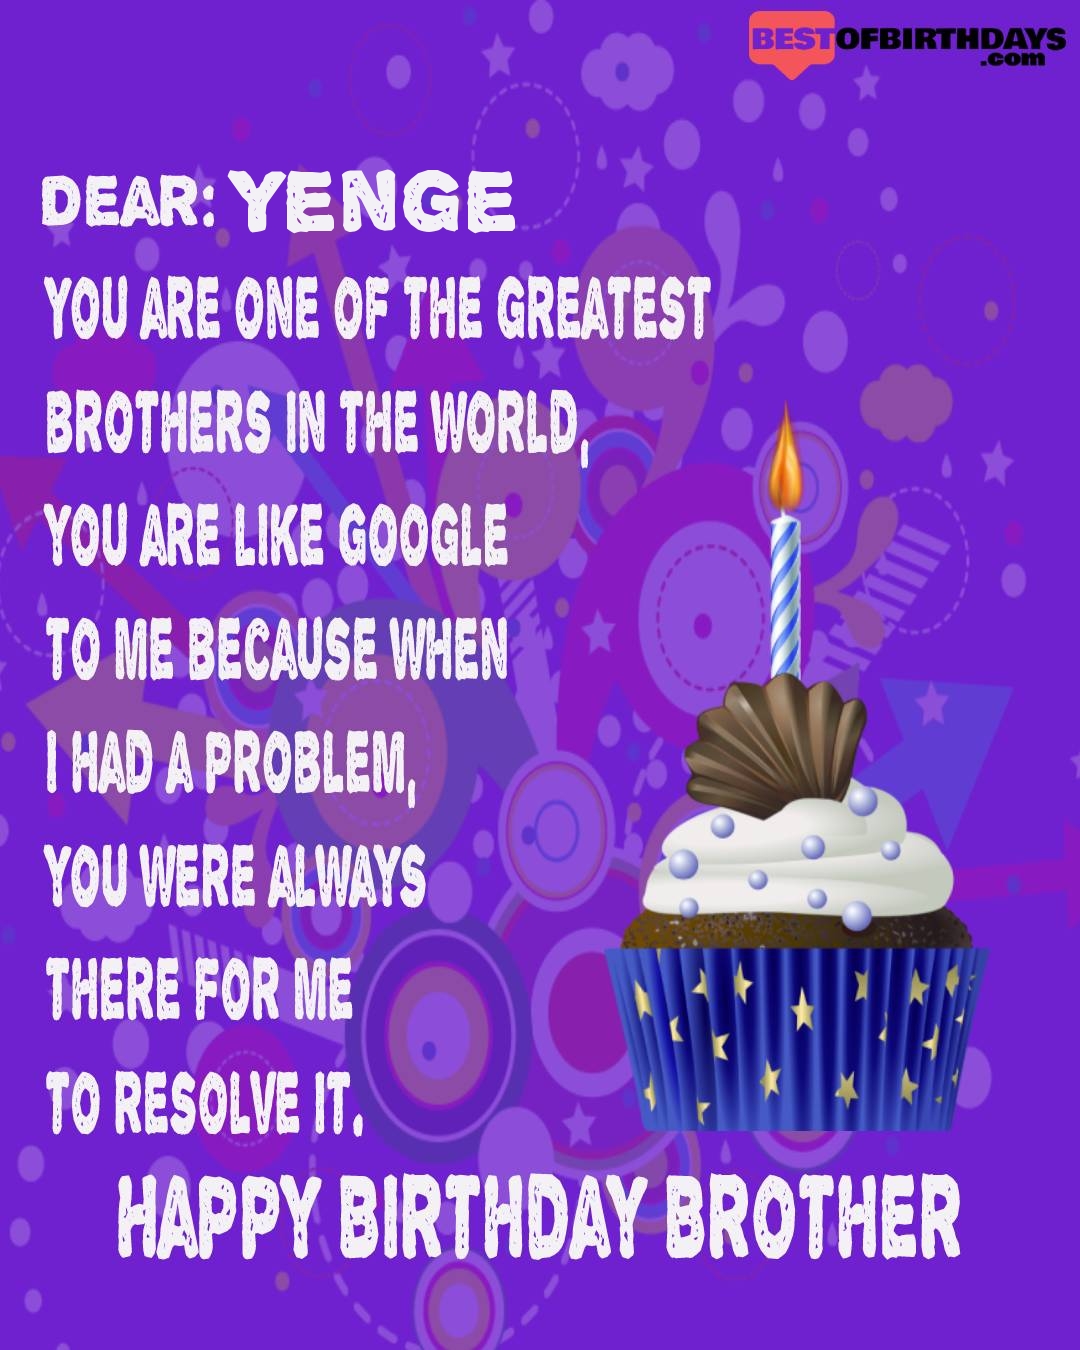 Happy birthday yenge bhai brother bro